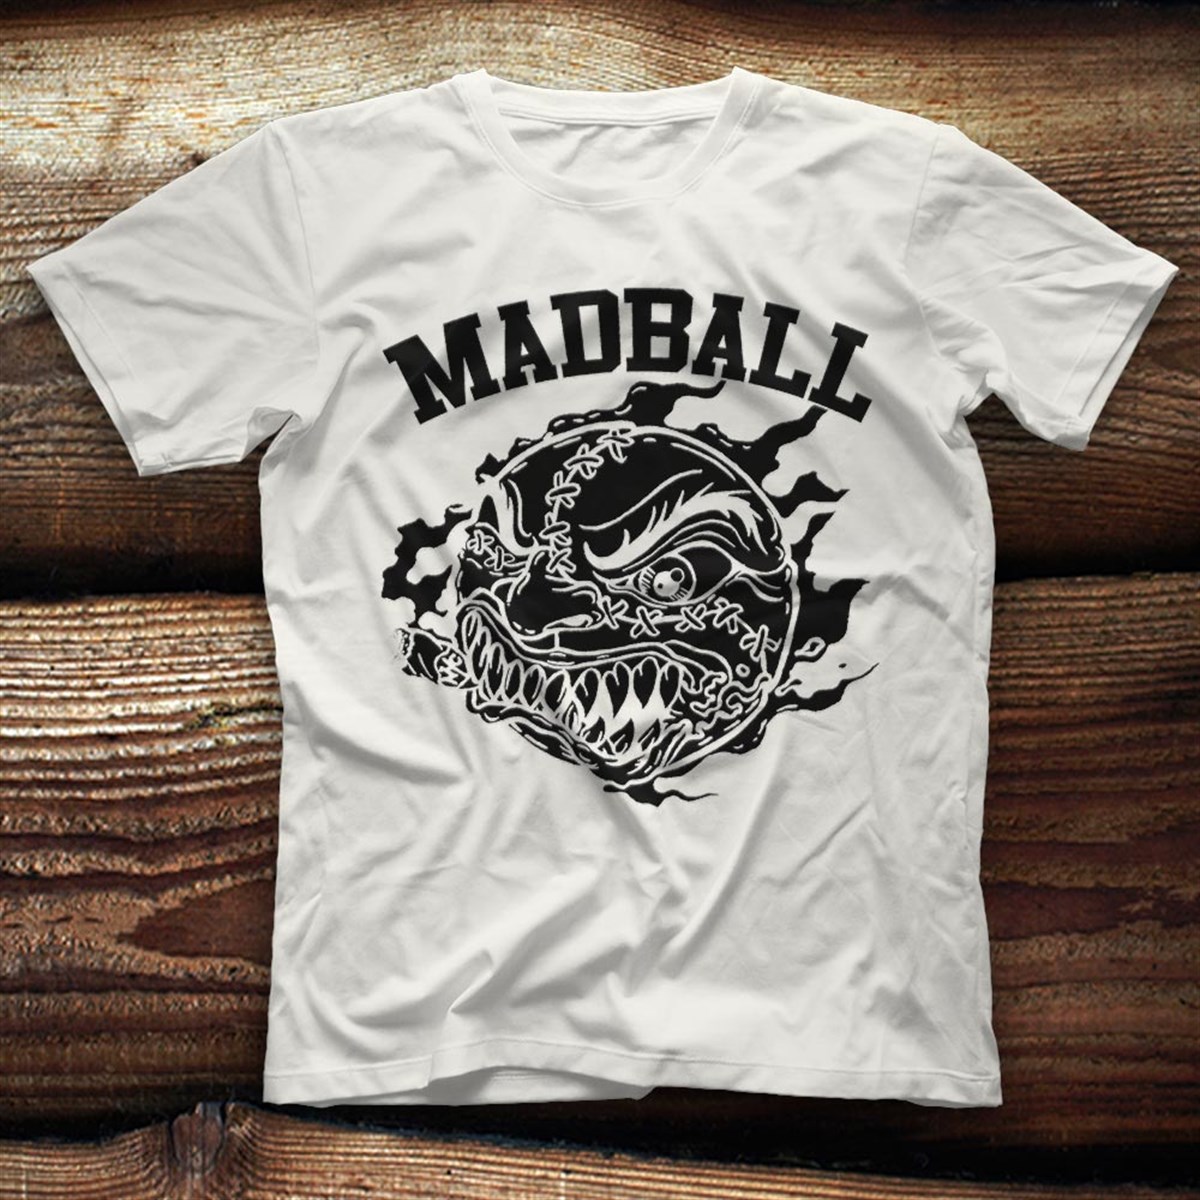 Madball T shirt,Music Band,Unisex Tshirt 03